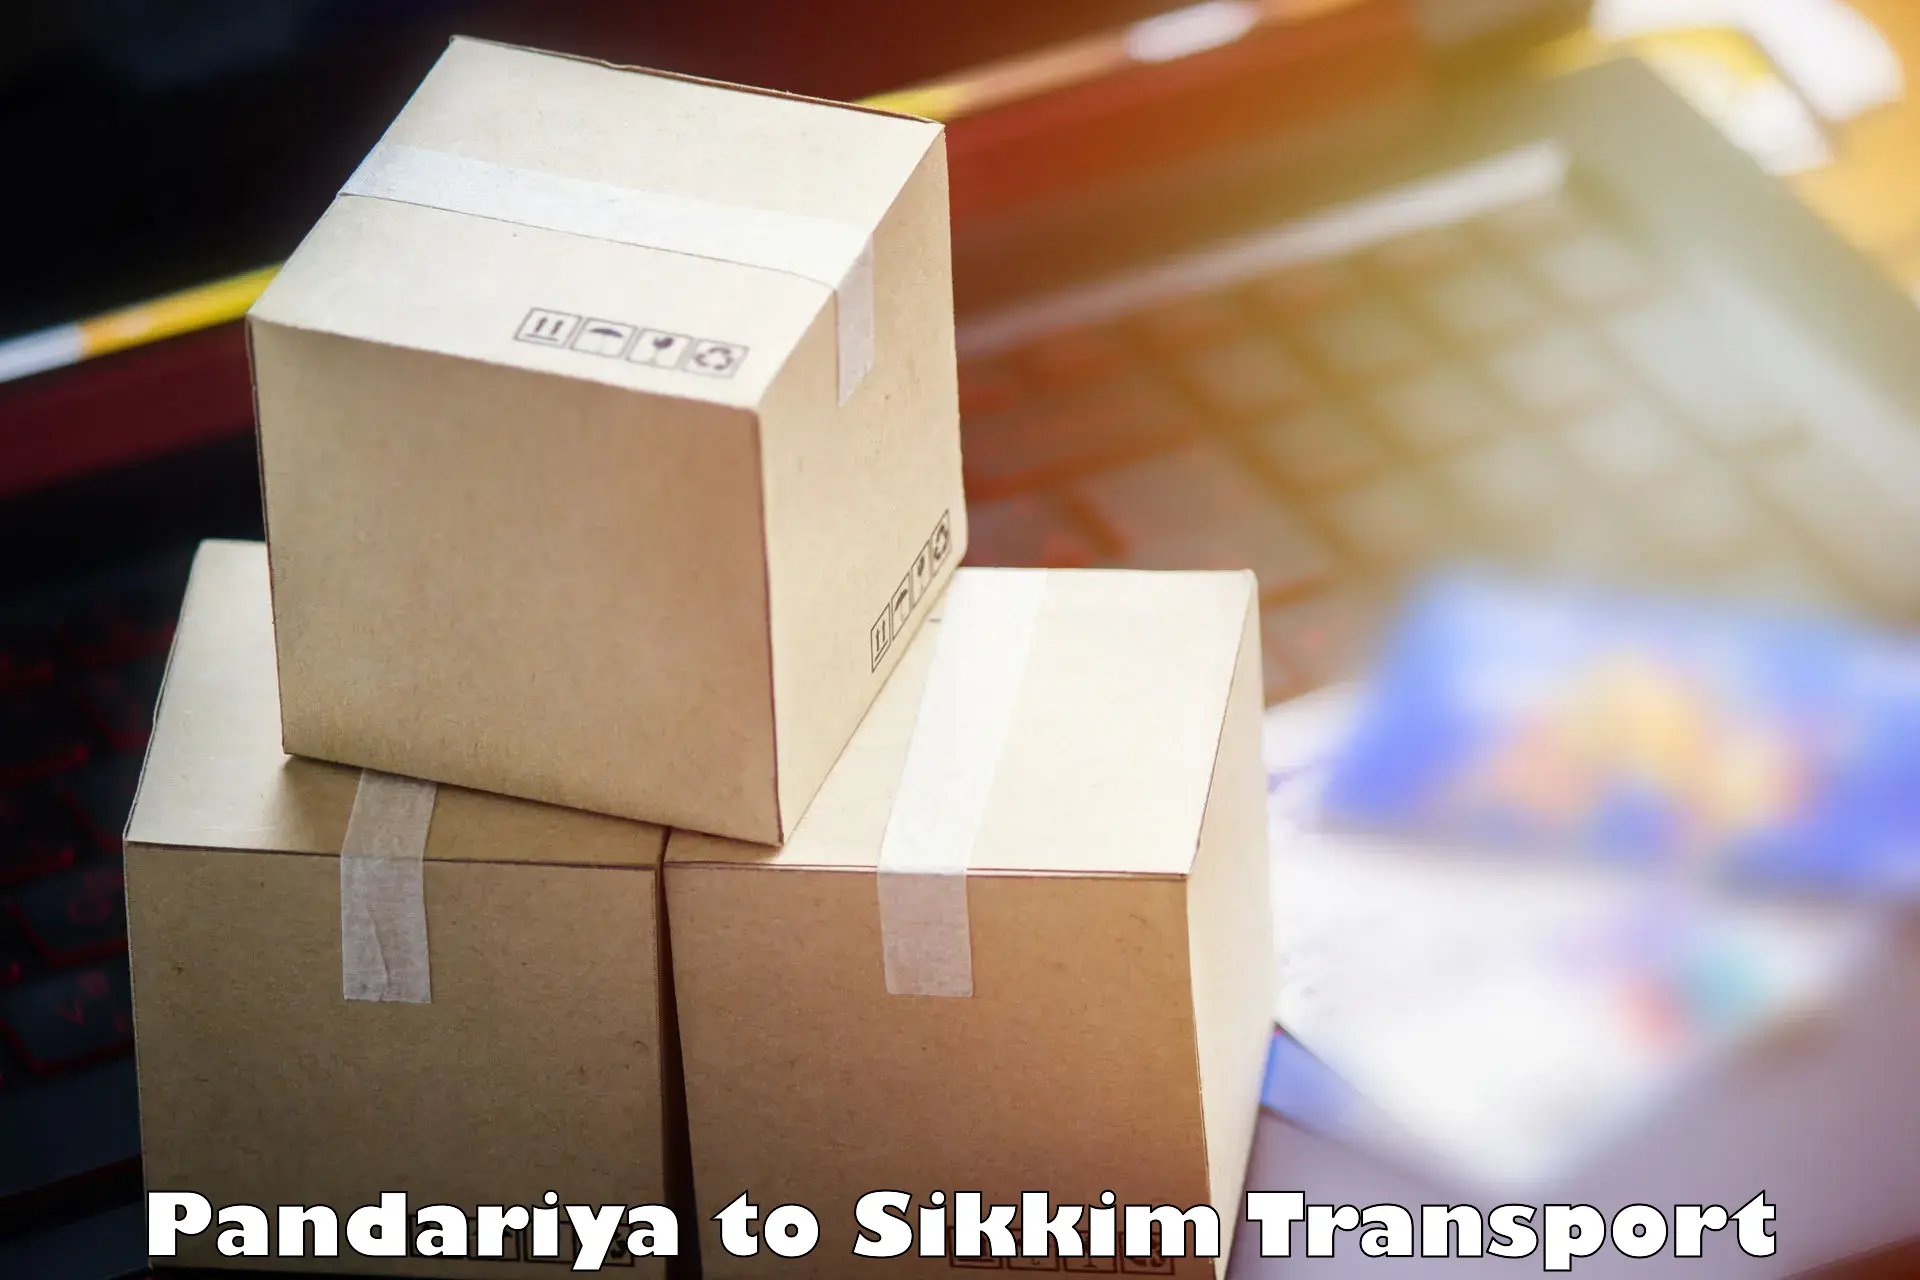 Furniture transport service in Pandariya to South Sikkim